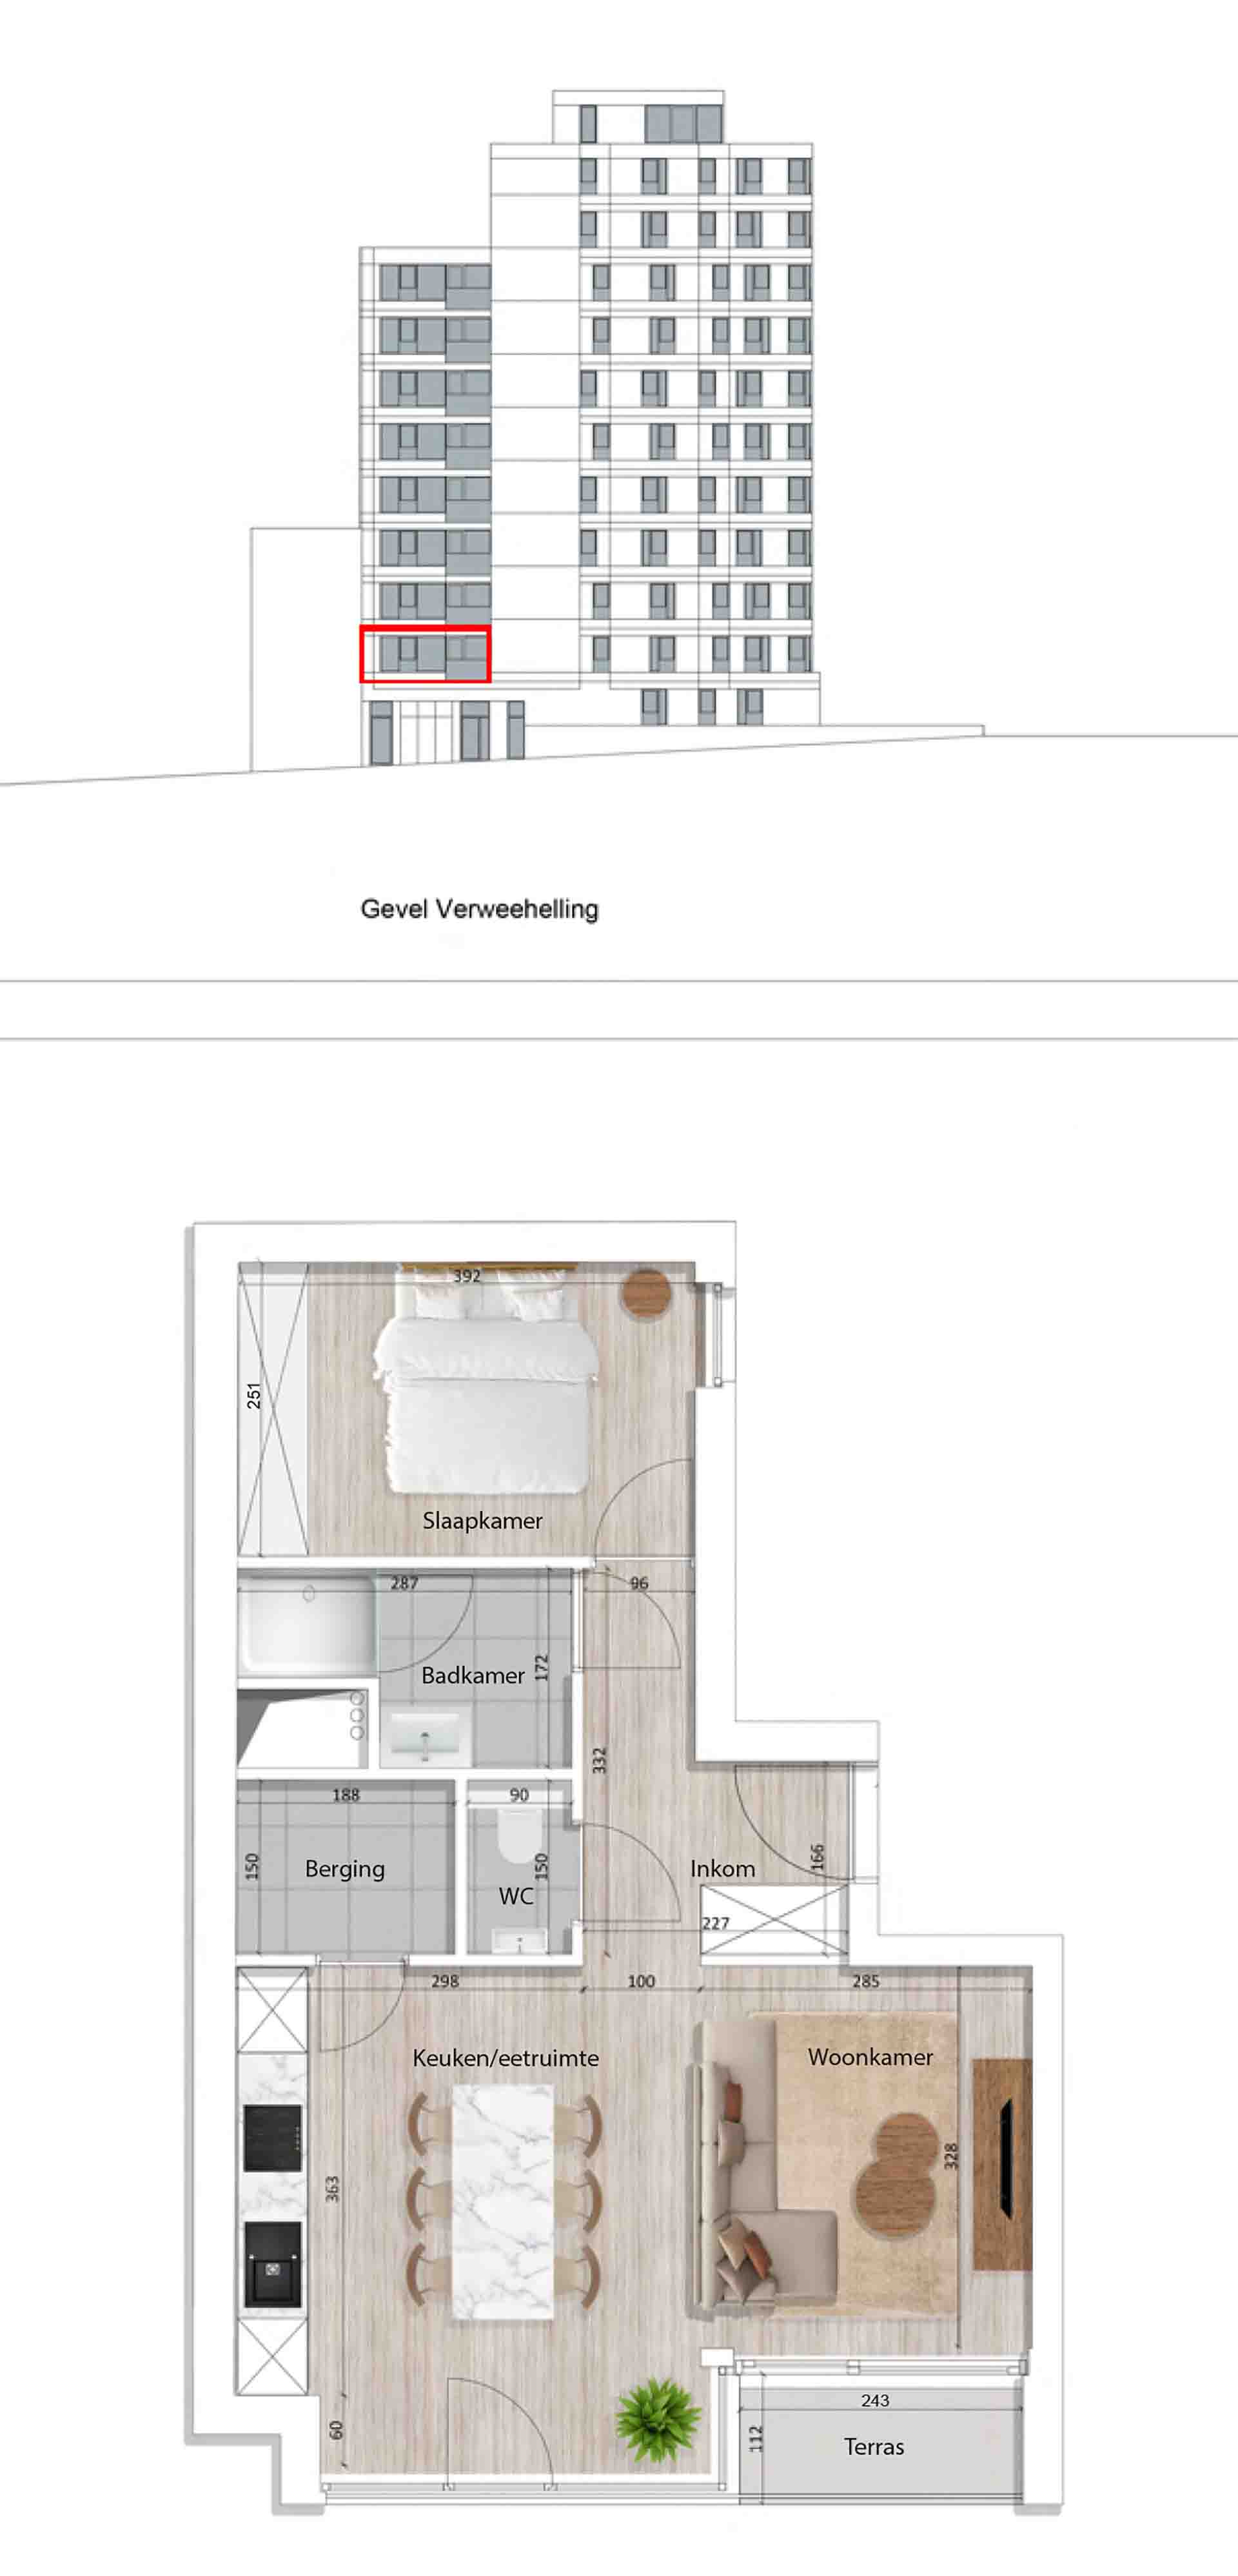 Residentie <br/> Pier - image appartement-te-koop-blankenberge-residentie-pier-plan-0101-nieuw on https://hoprom.be